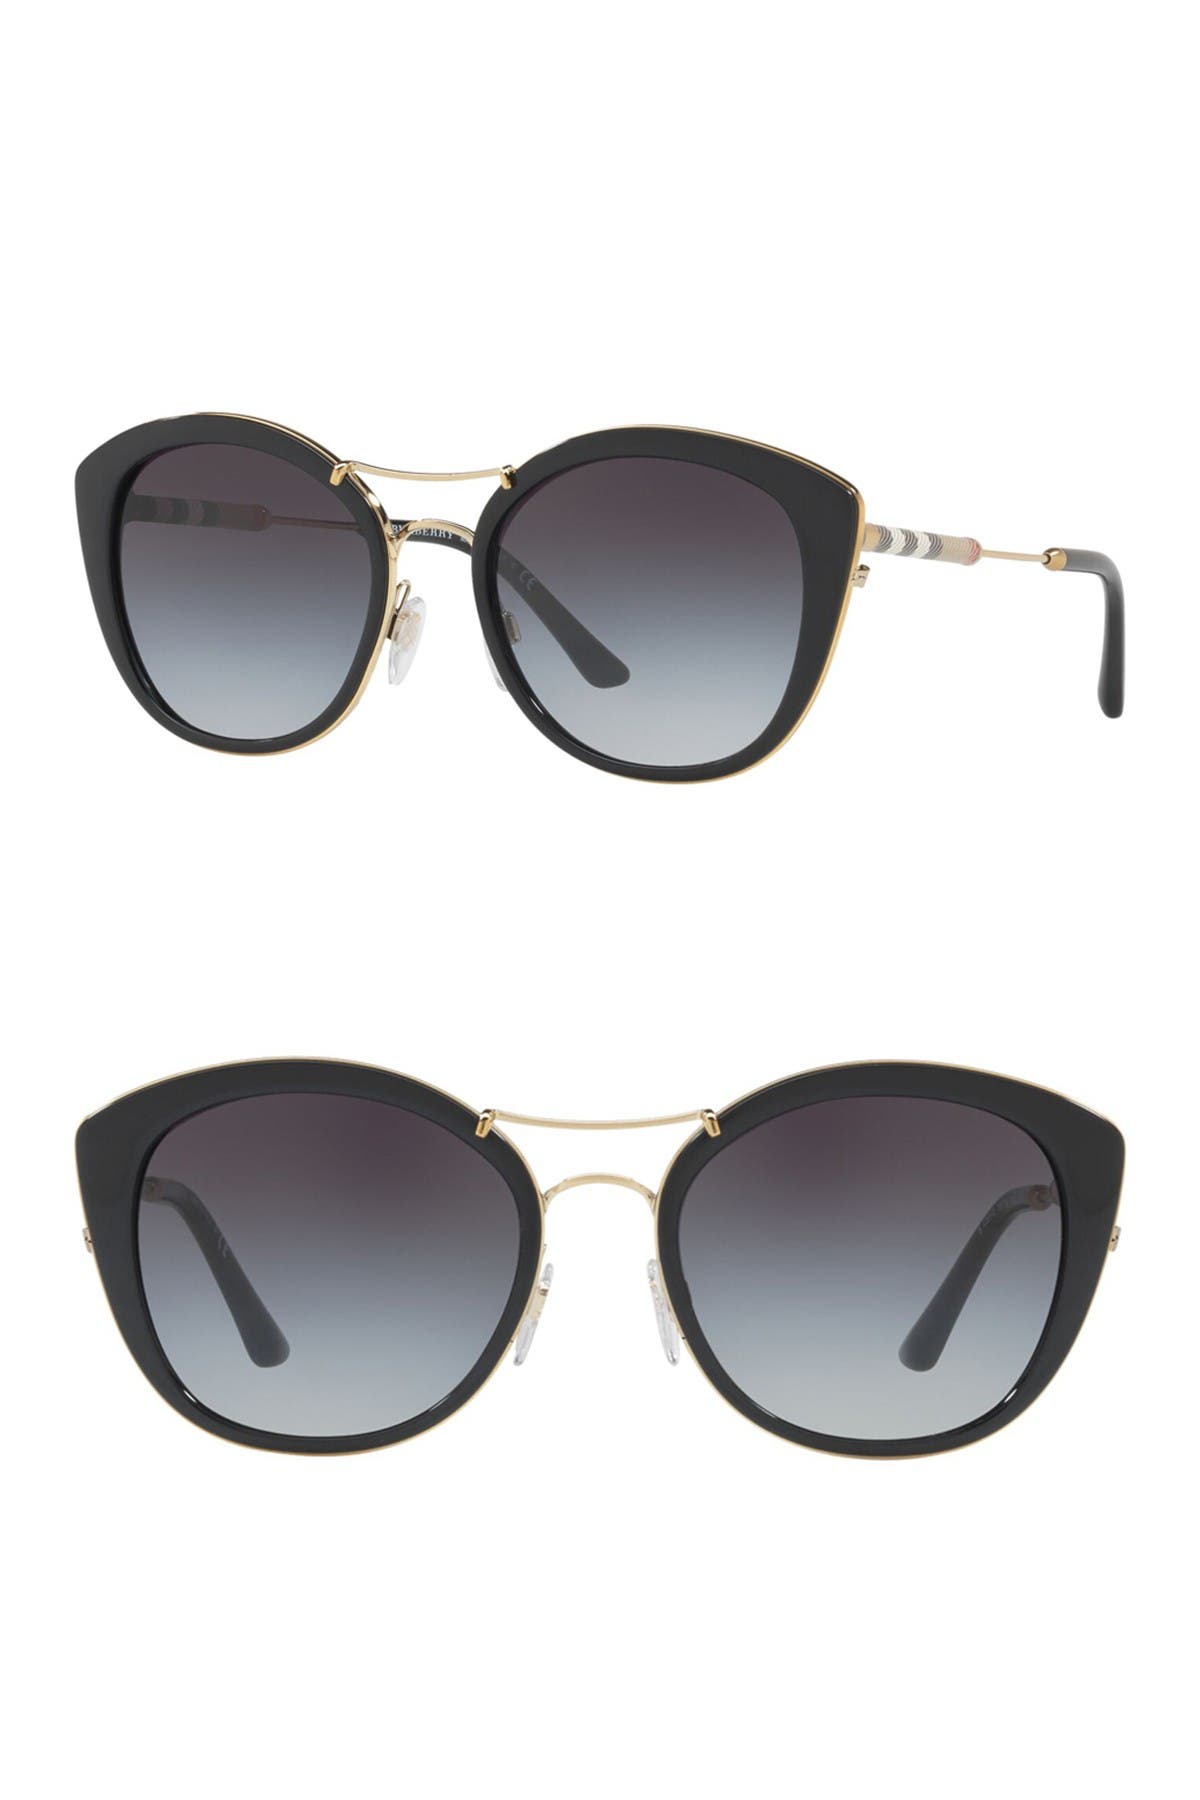 Designer Sunglasses under $100 